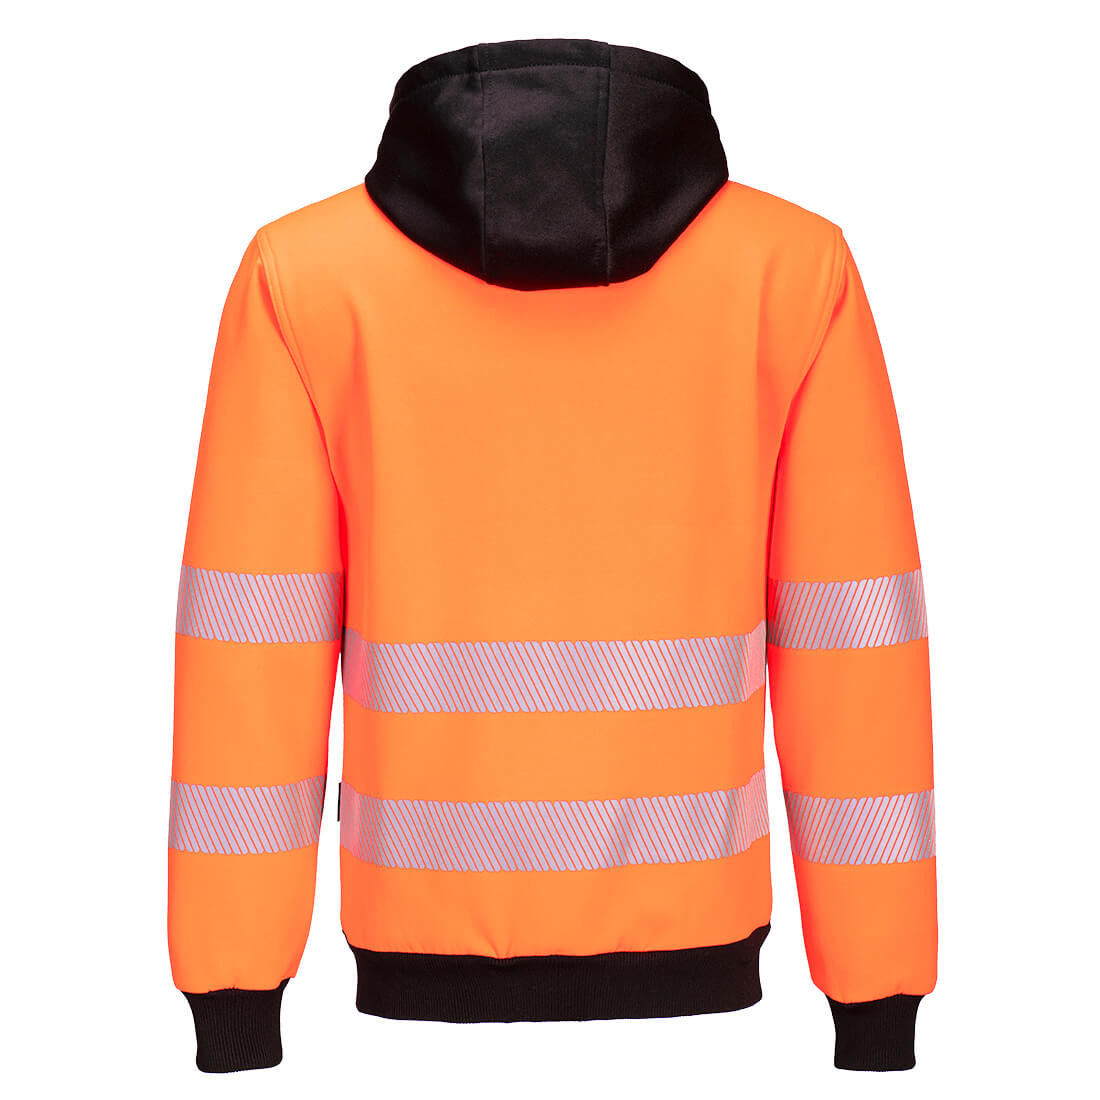 PW3 Warnschutz-Kapuzenpullover mit Reißverschluss - Arbeitskleidung